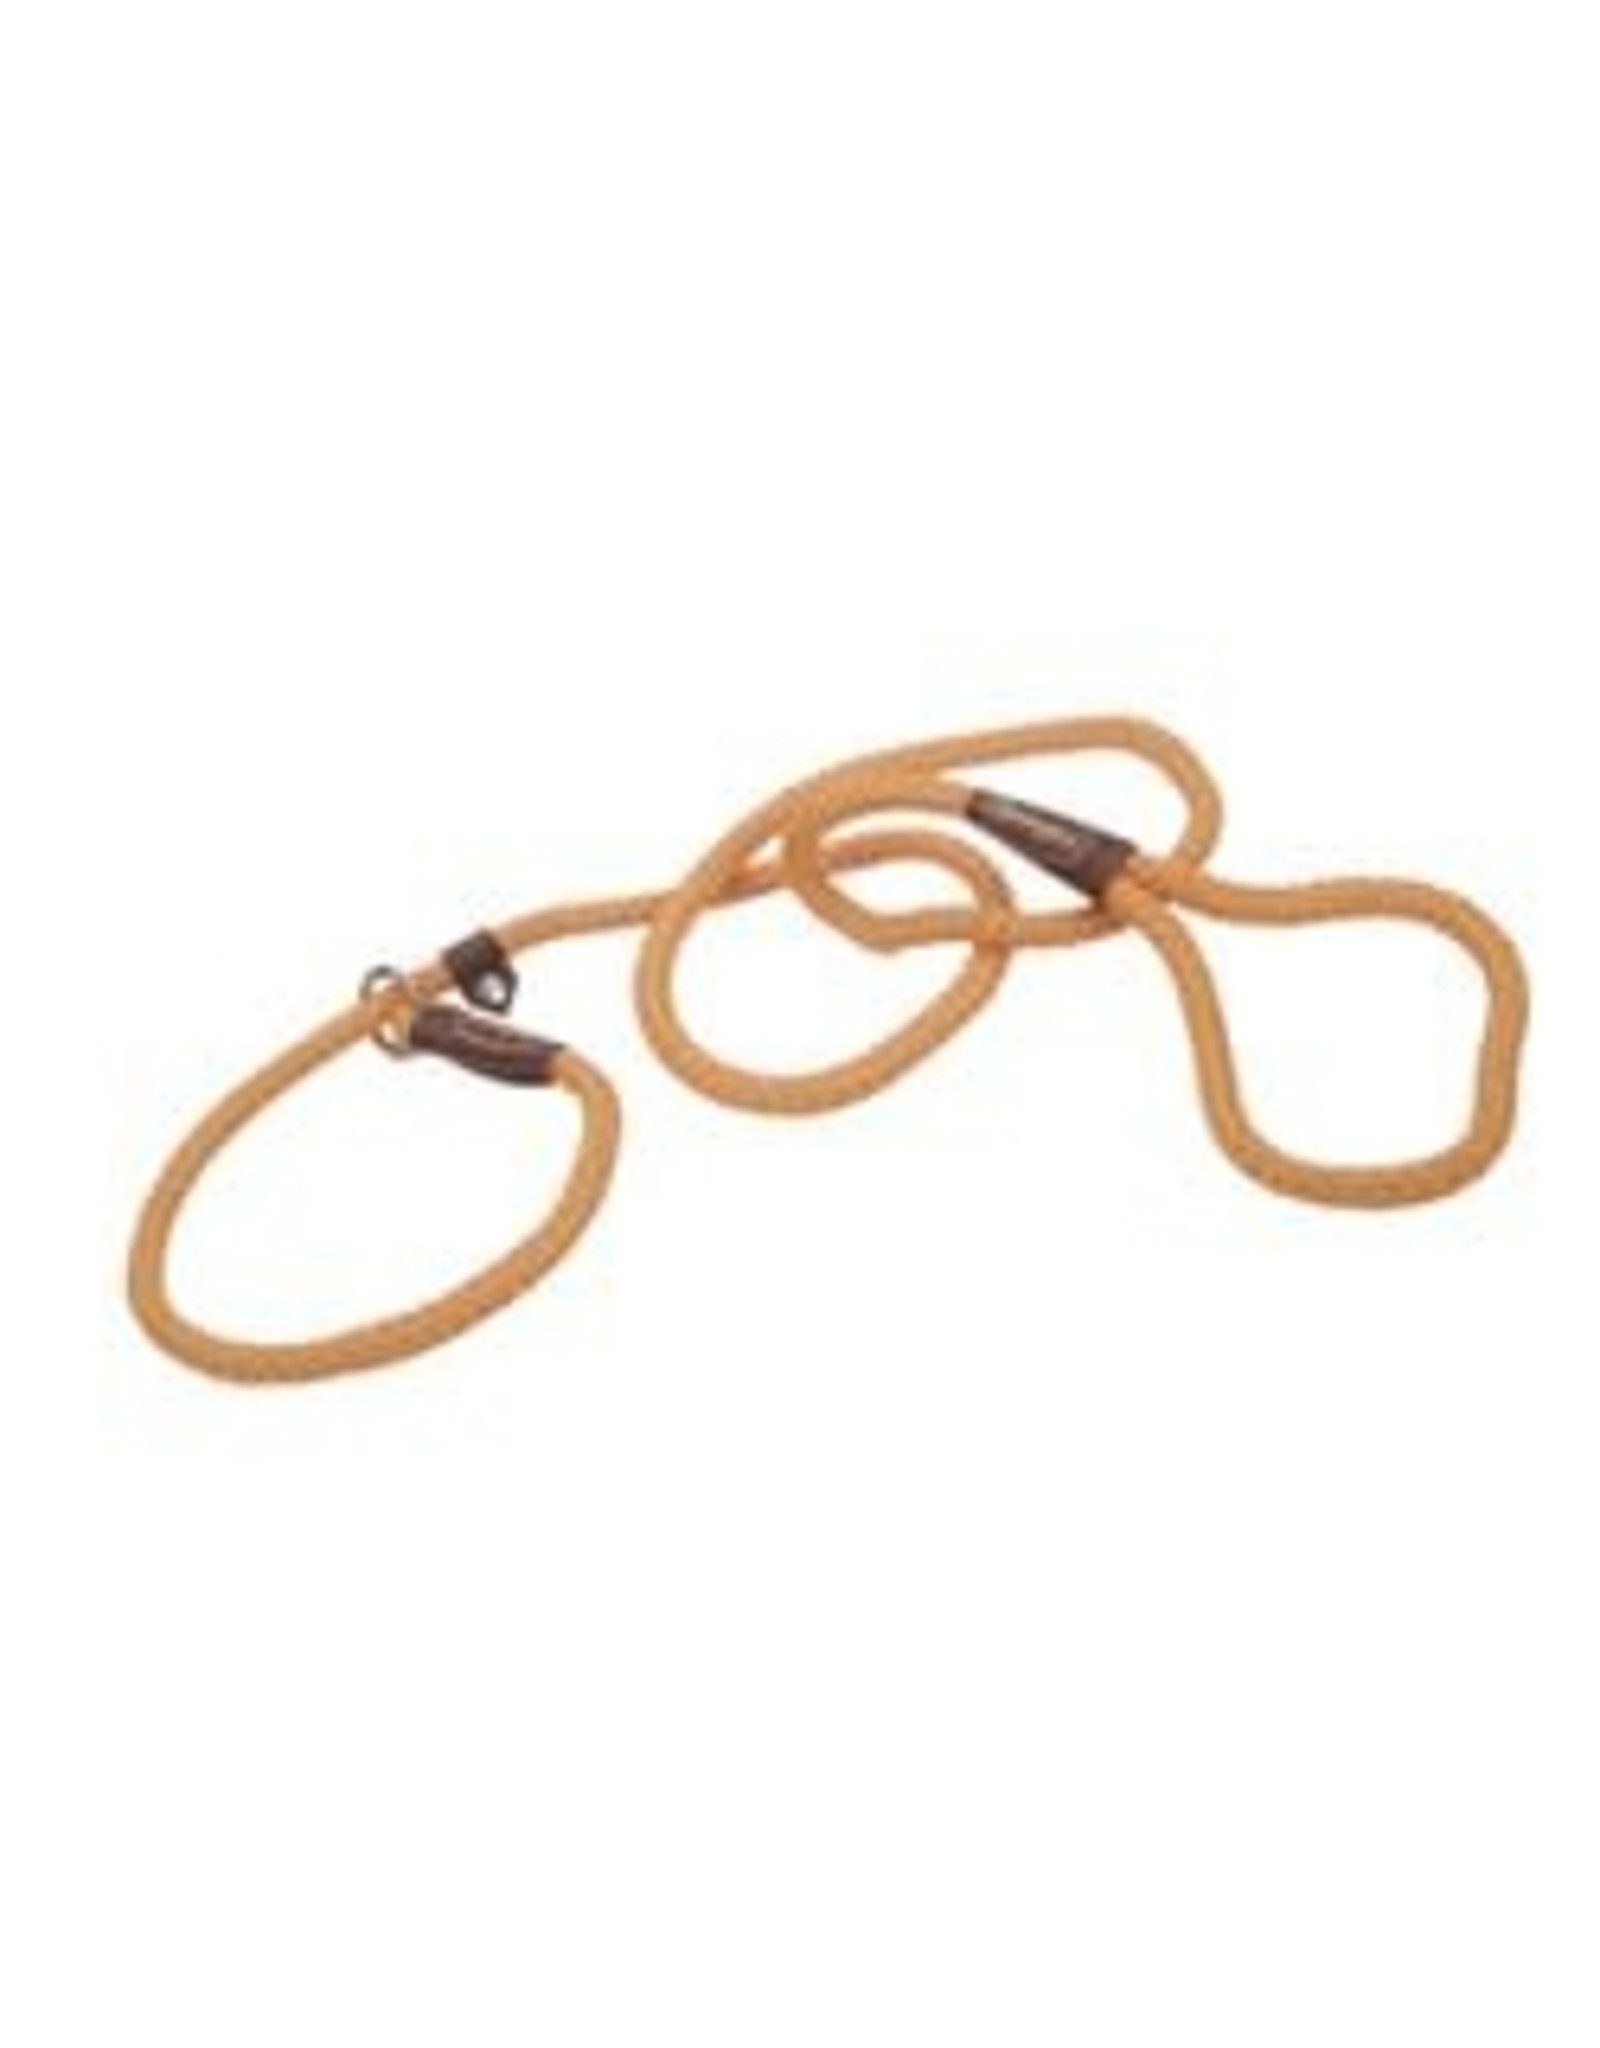 Coastal Coastal® Remington® Braided Rope Dog Slip Leash Safety Orange 6 Feet